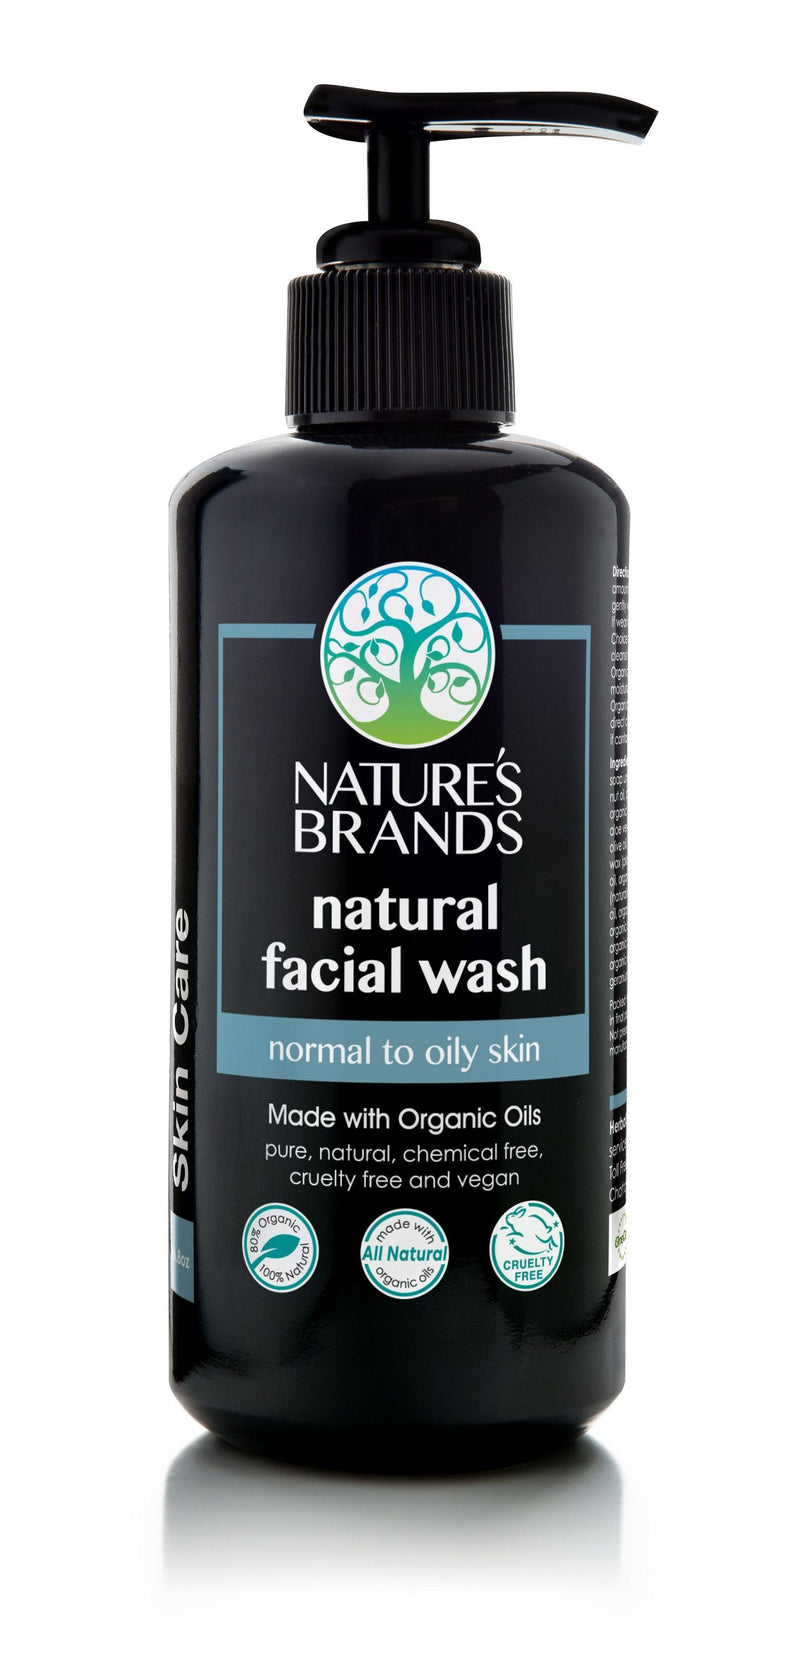 Herbal Choice Mari Natural Facial Wash; Made with Organic - Herbal Choice Mari Natural Facial Wash; Made with Organic - Herbal Choice Mari Natural Facial Wash; Made with Organic